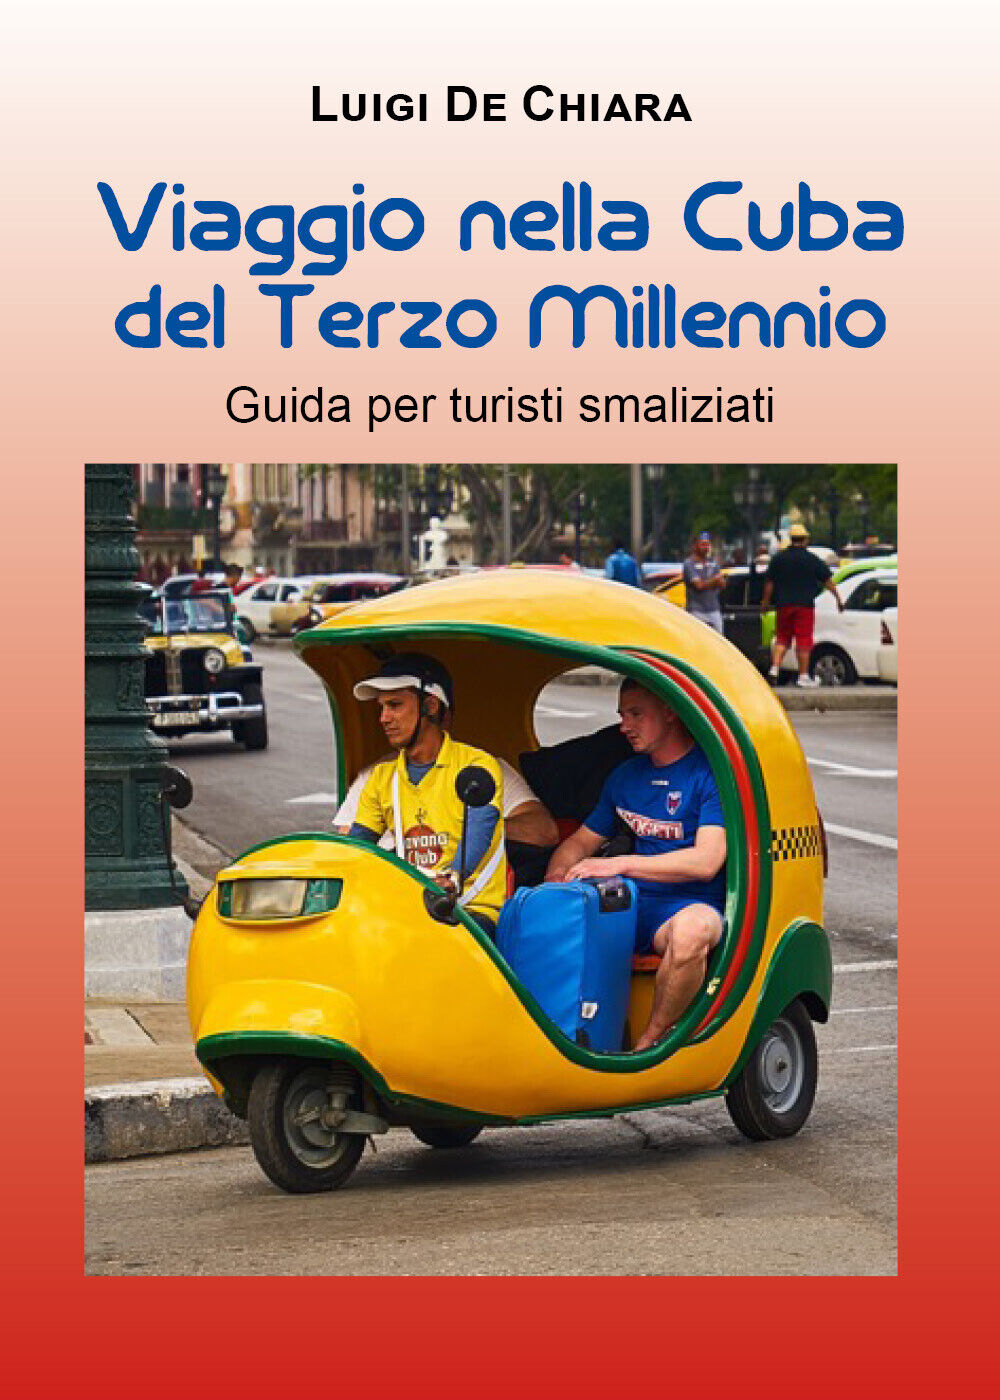  Viaggio nella Cuba del Terzo Millennio. Guida per turisti smaliziati - 2021 libro usato